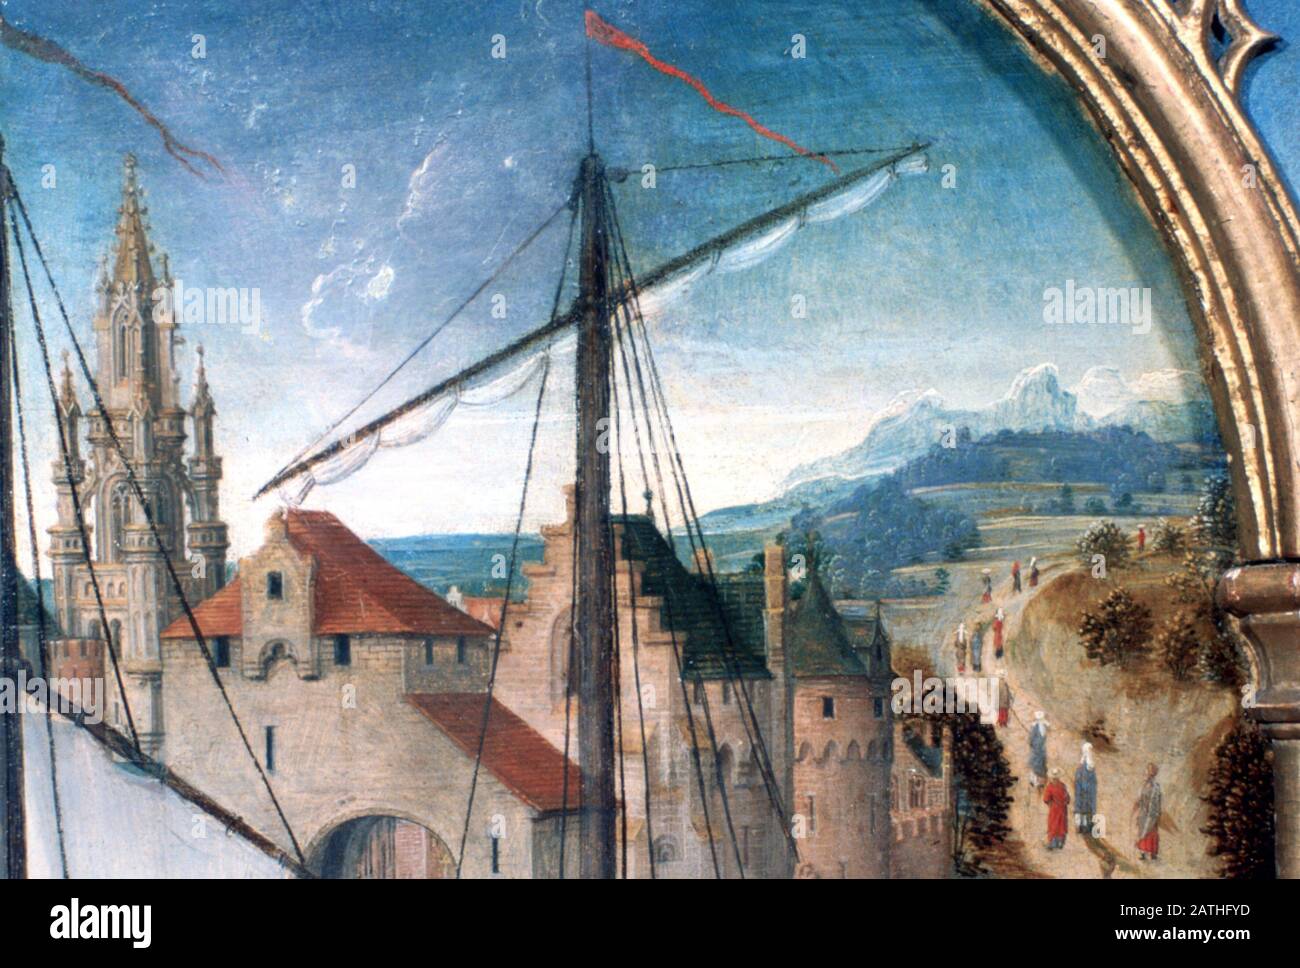 Sanctuaire St Ursula, Départ De Bâle, Détail, 1489. Le Reliquaire De St Ursula, Musée Memling, Sint-Janshospitaal, Bruges. Banque D'Images